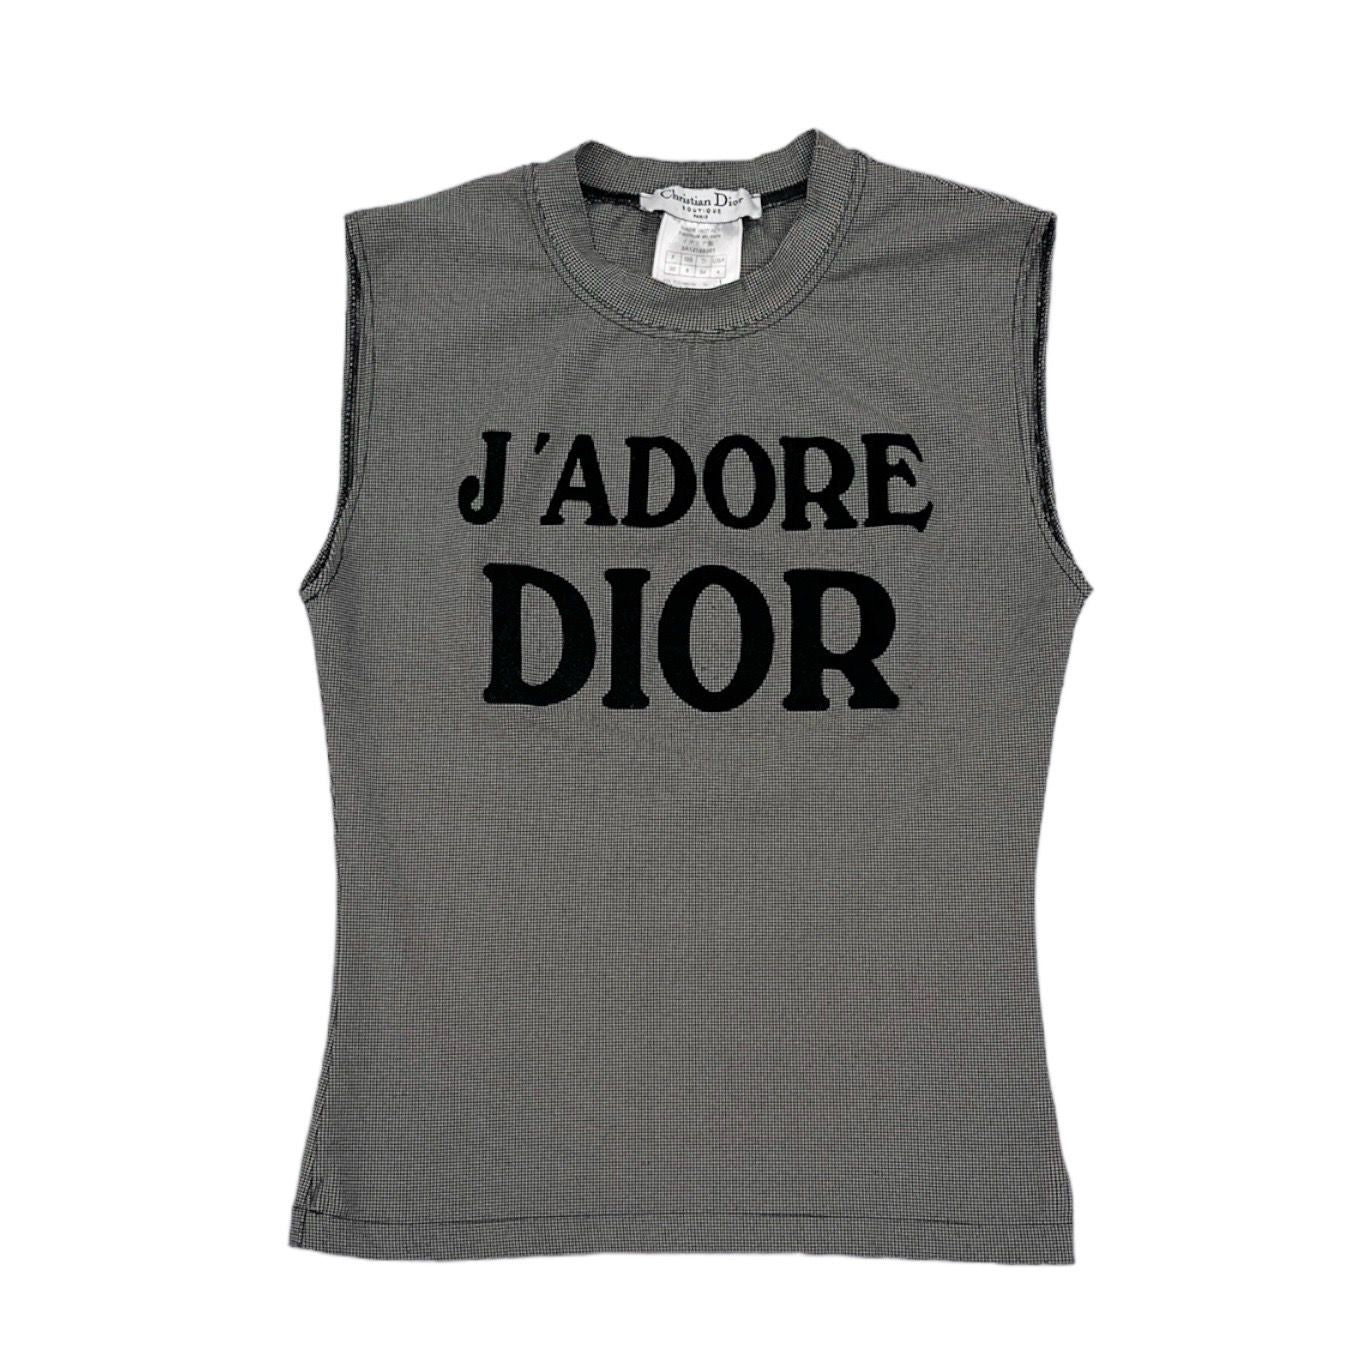 Dior – Treasures of NYC